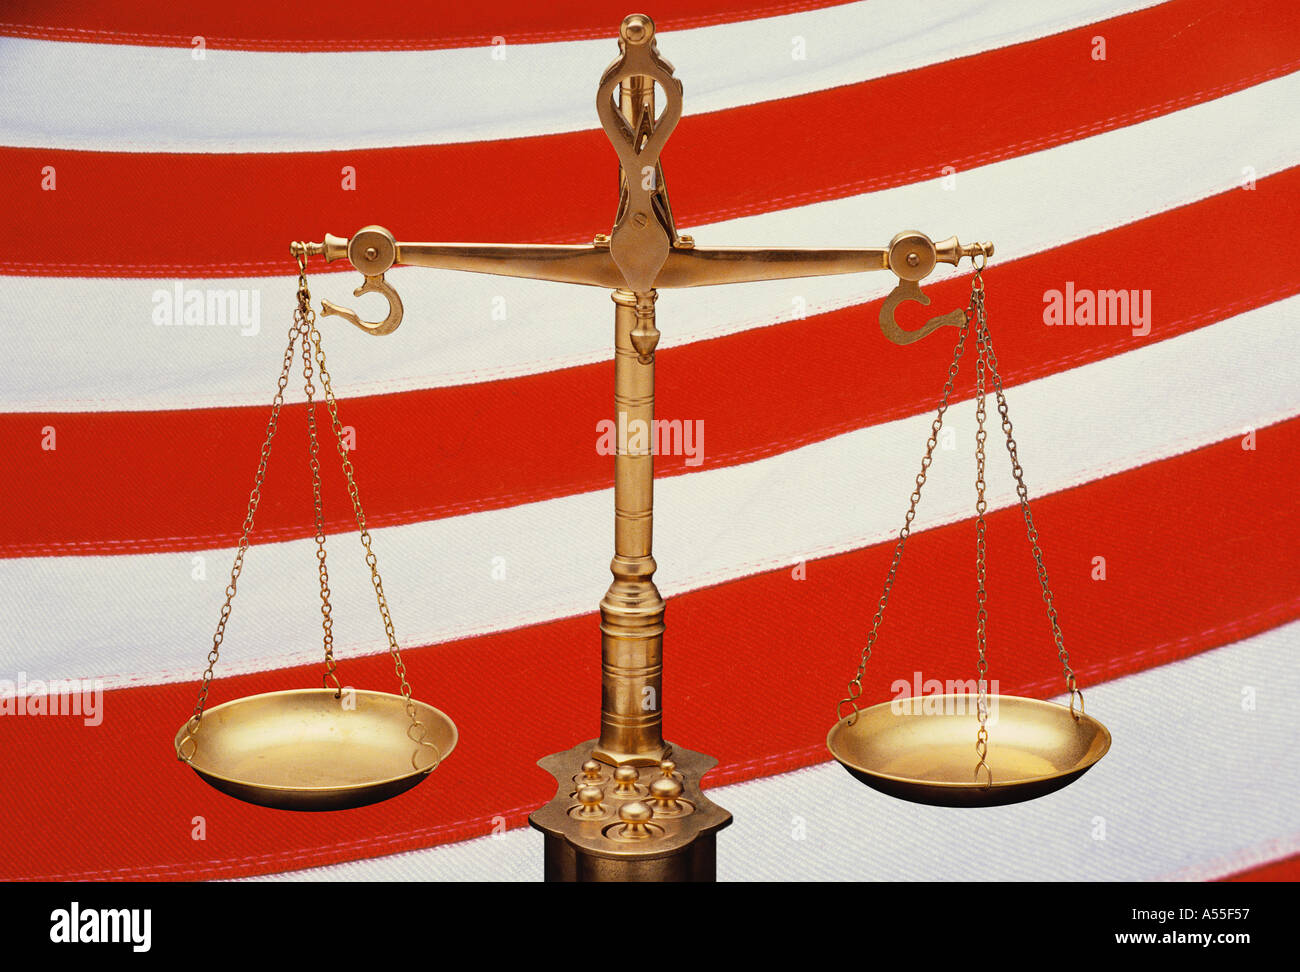 Dies sind die goldenen Waage der Gerechtigkeit vor dem Hintergrund der roten und weißen Streifen der amerikanischen Flagge die Waage eingestellt Stockfoto